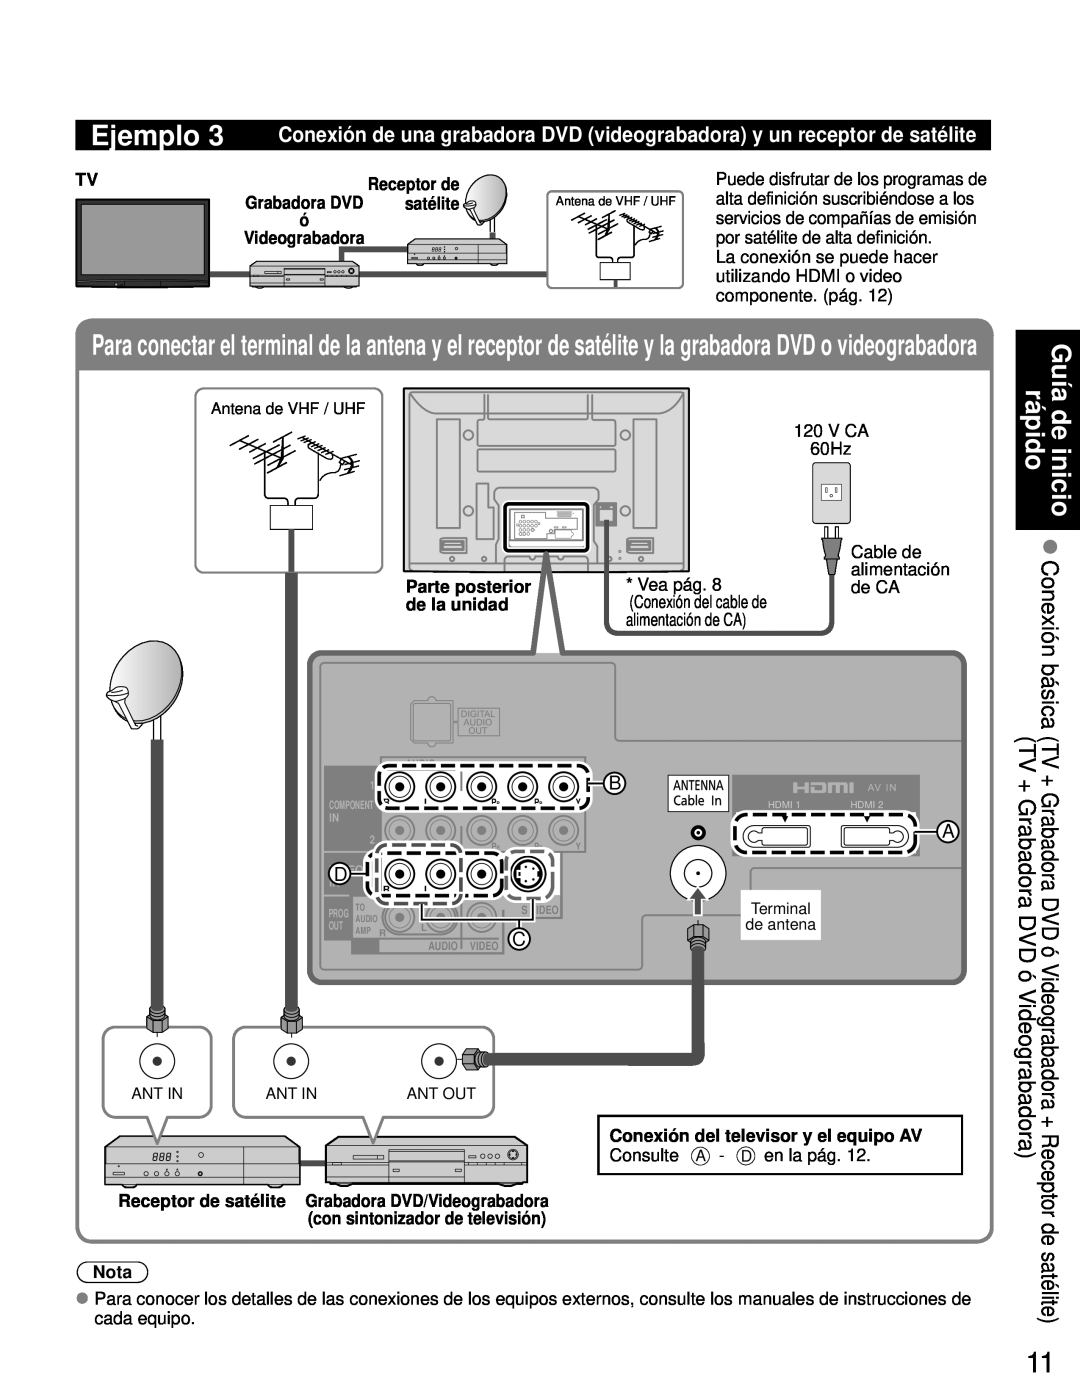 Panasonic TH-46PZ80U + Receptor de satélite, Receptor de Grabadora DVD satélite ó Videograbadora, Ejemplo, Guía, Nota 